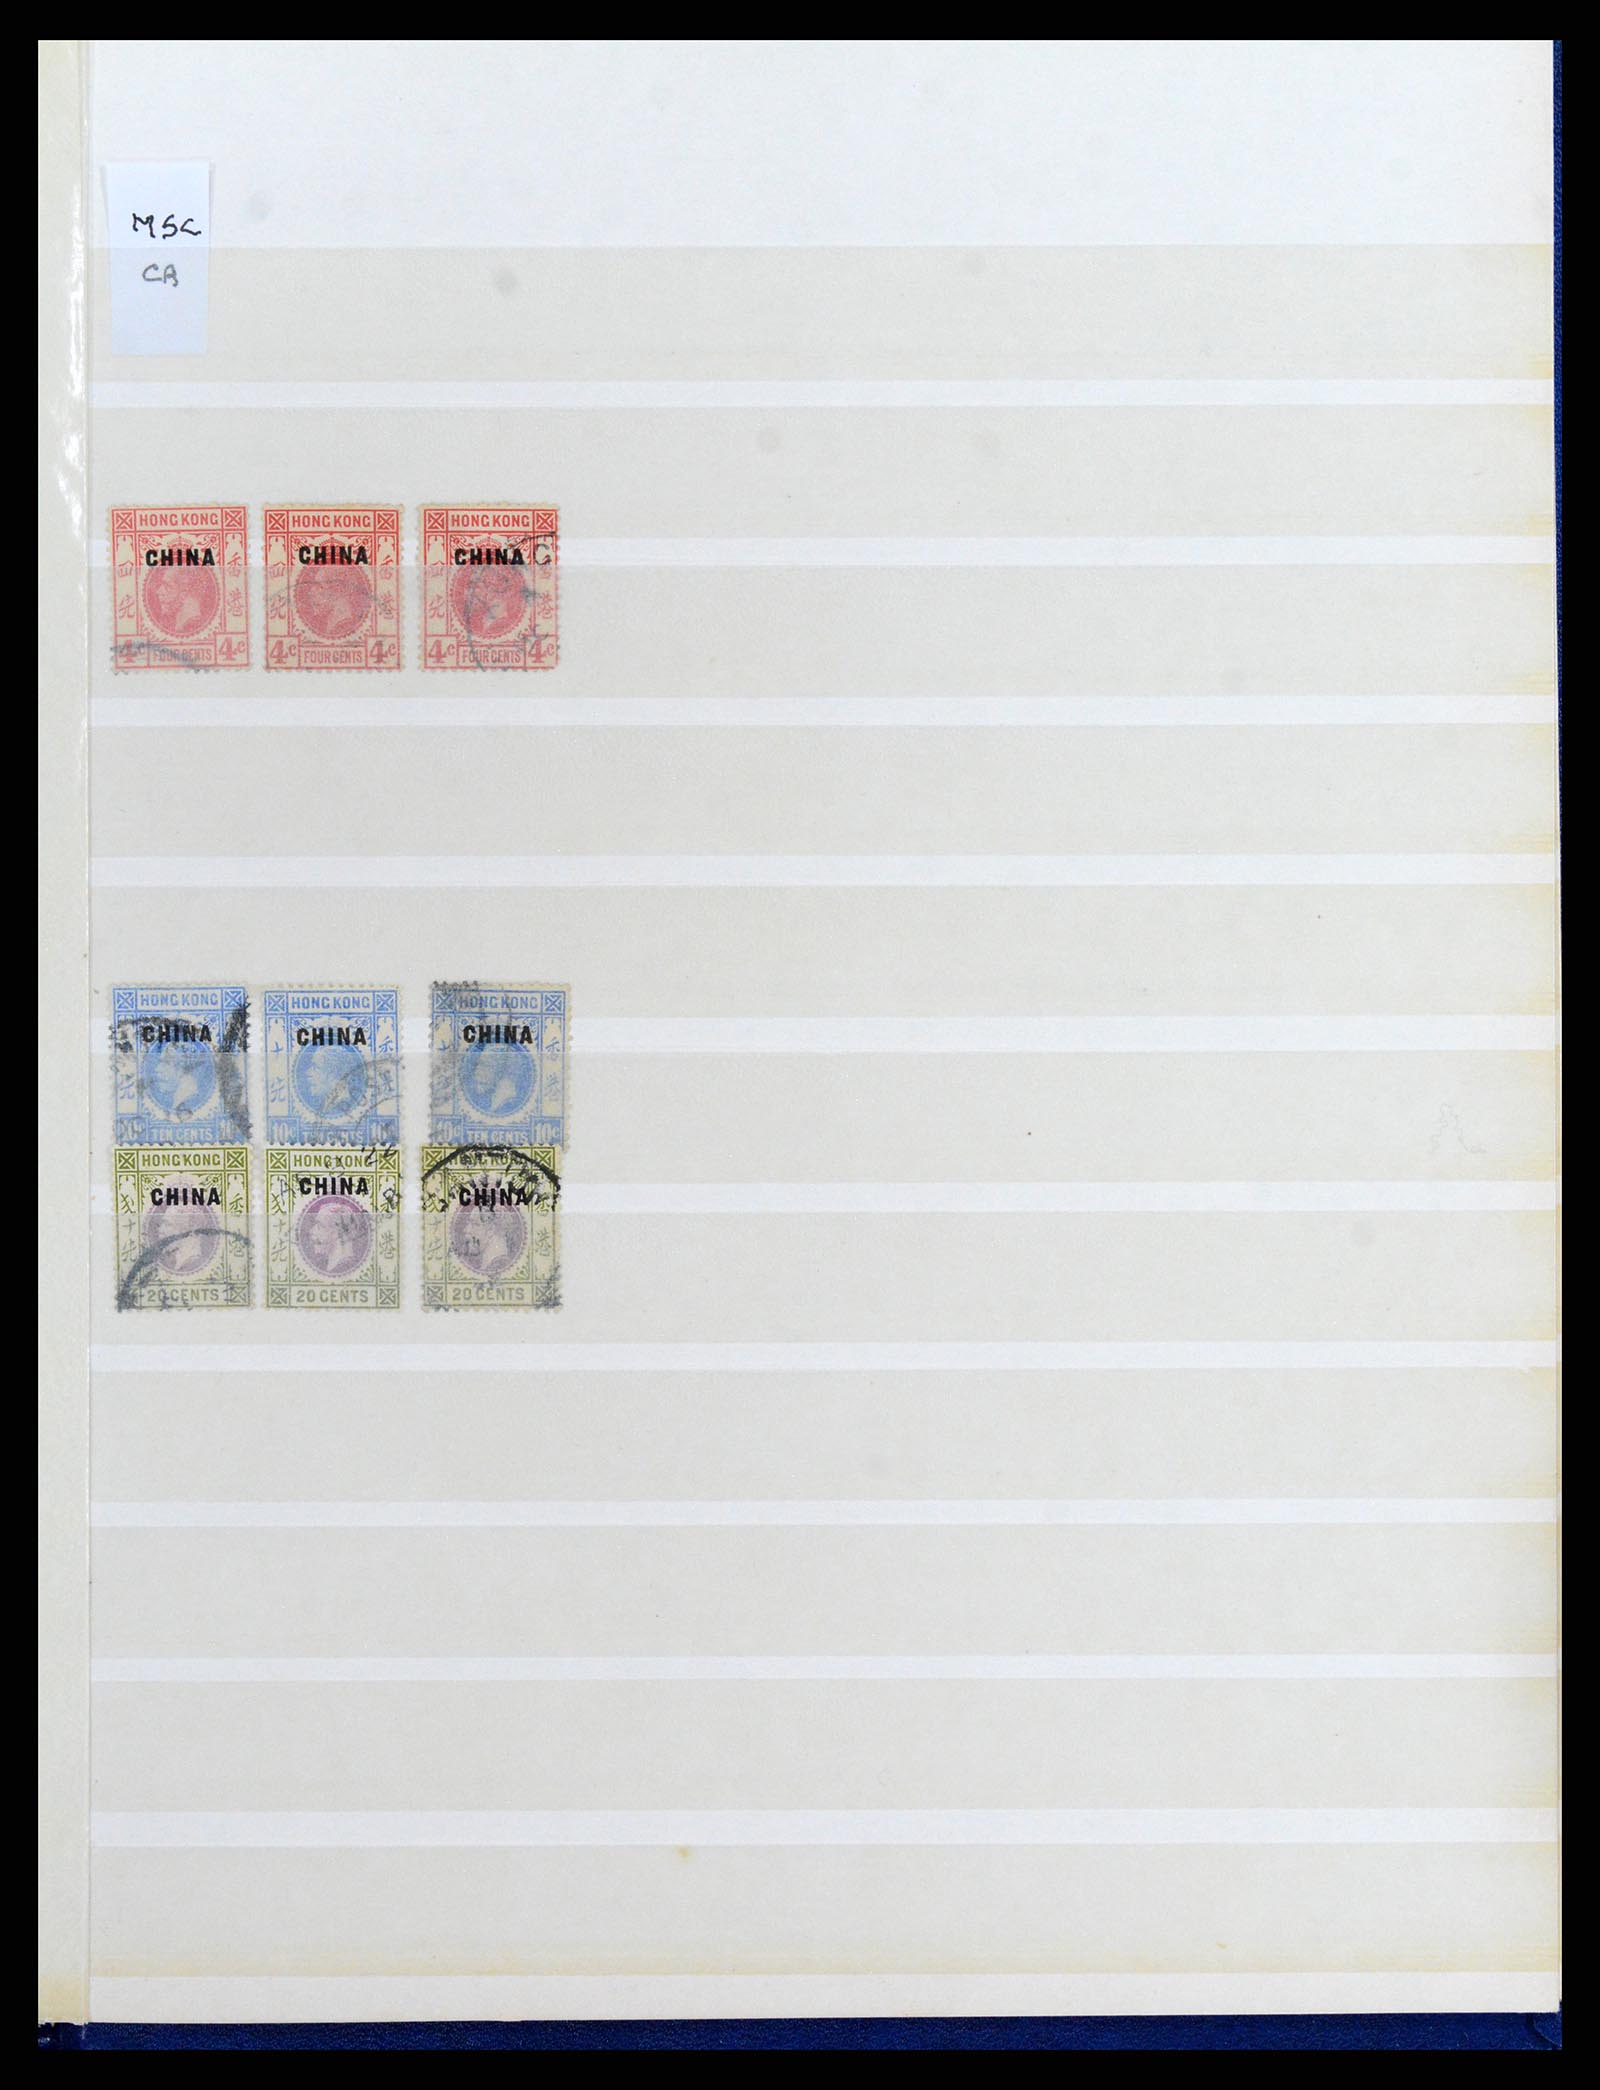 37358 050 - Stamp collection 37358 Hong Kong 1861-1997.